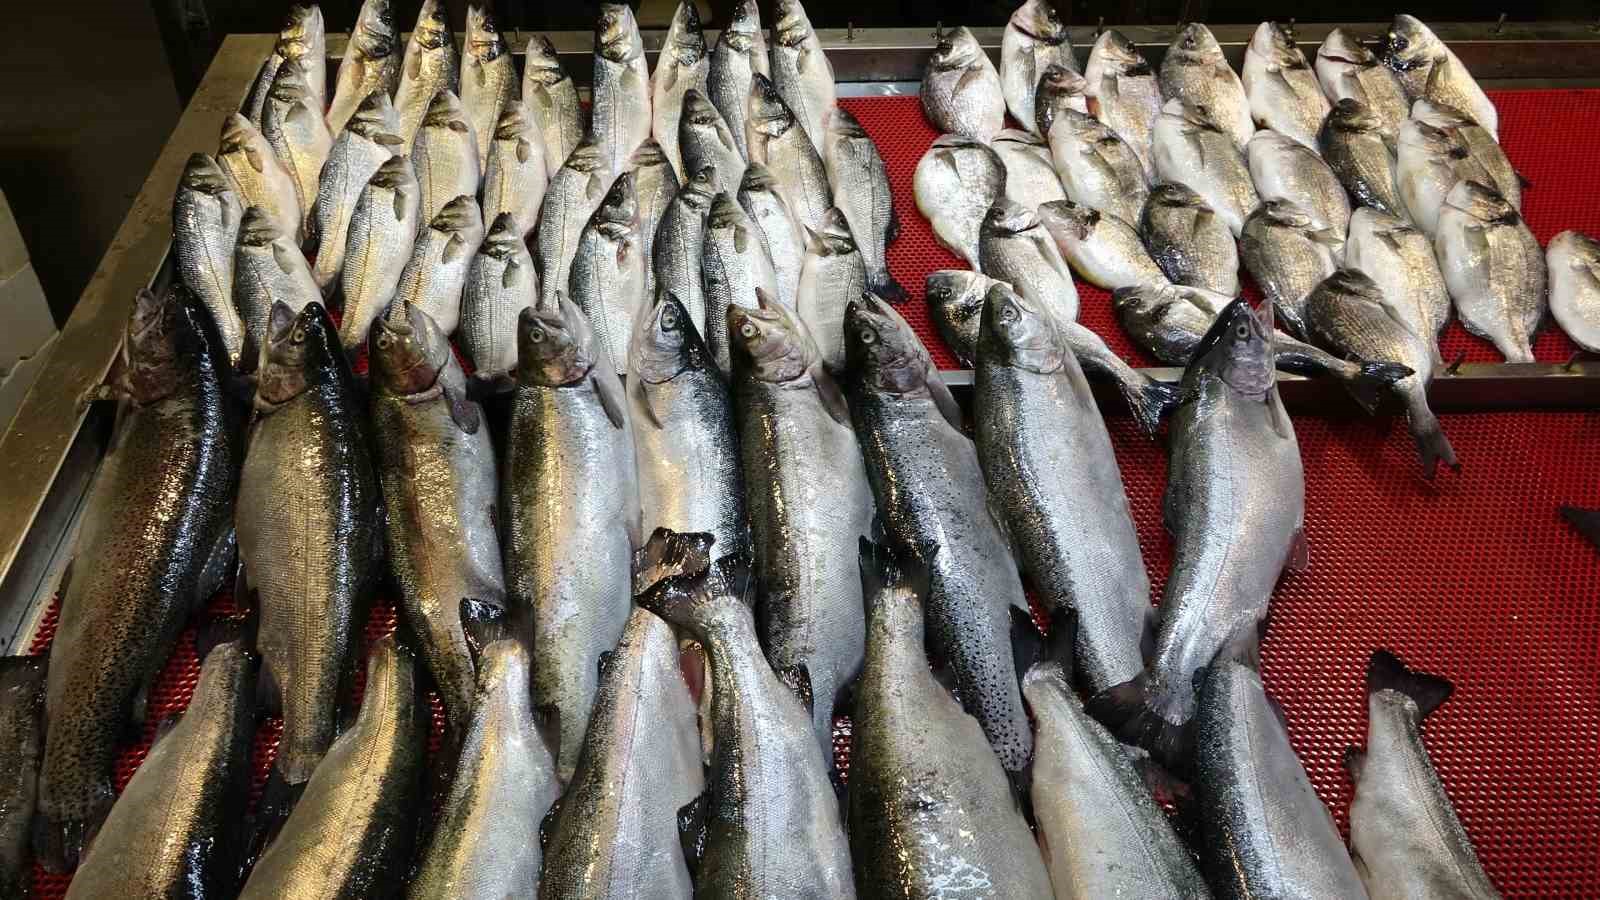 Denizlerde av yasağı başladı, tezgahlar kültür balıklarına kaldı
